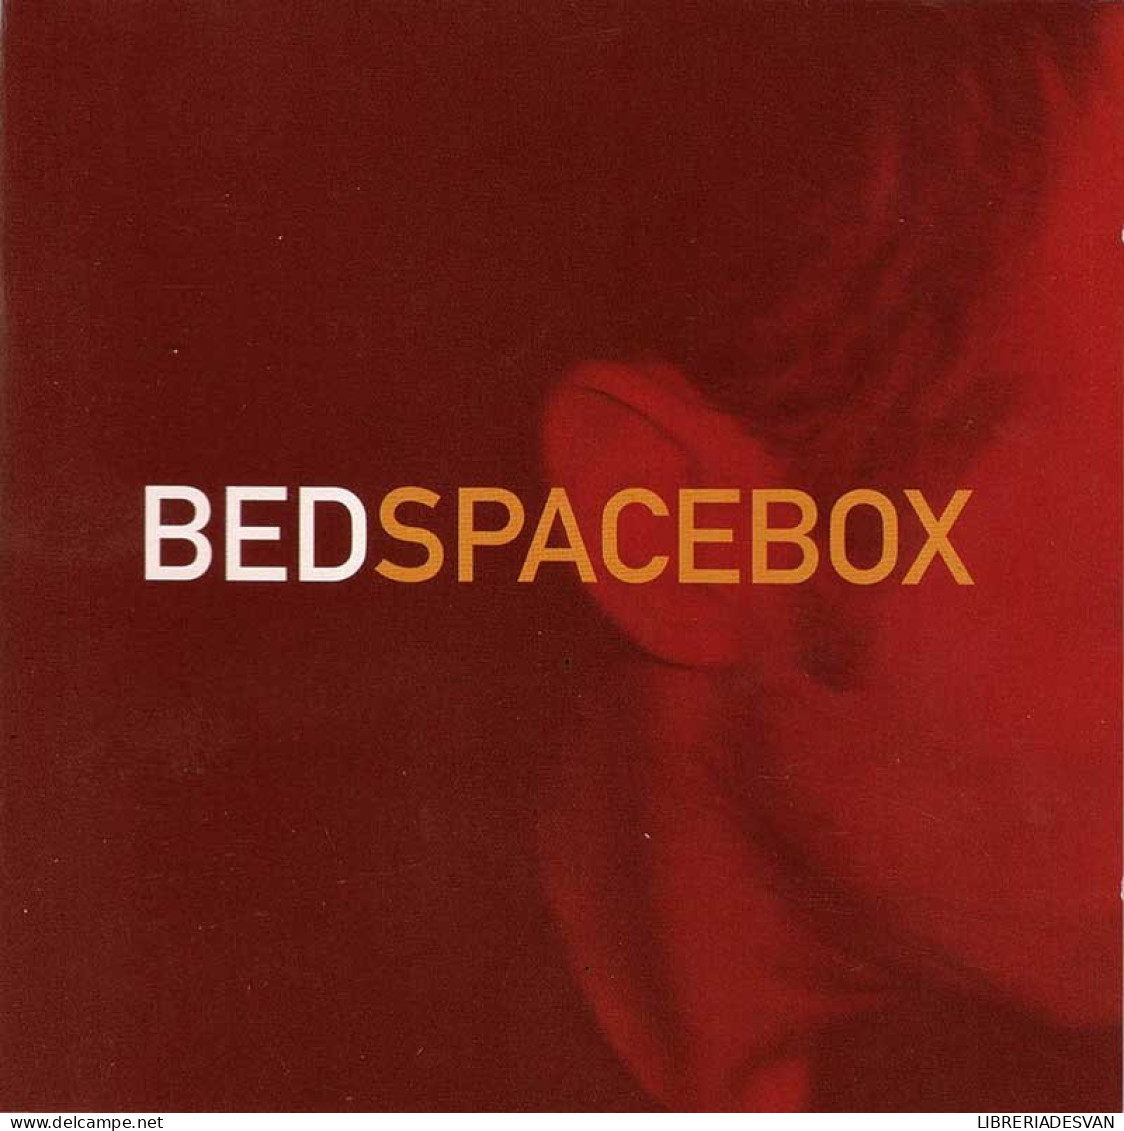 Bed - Spacebox. CD - Jazz